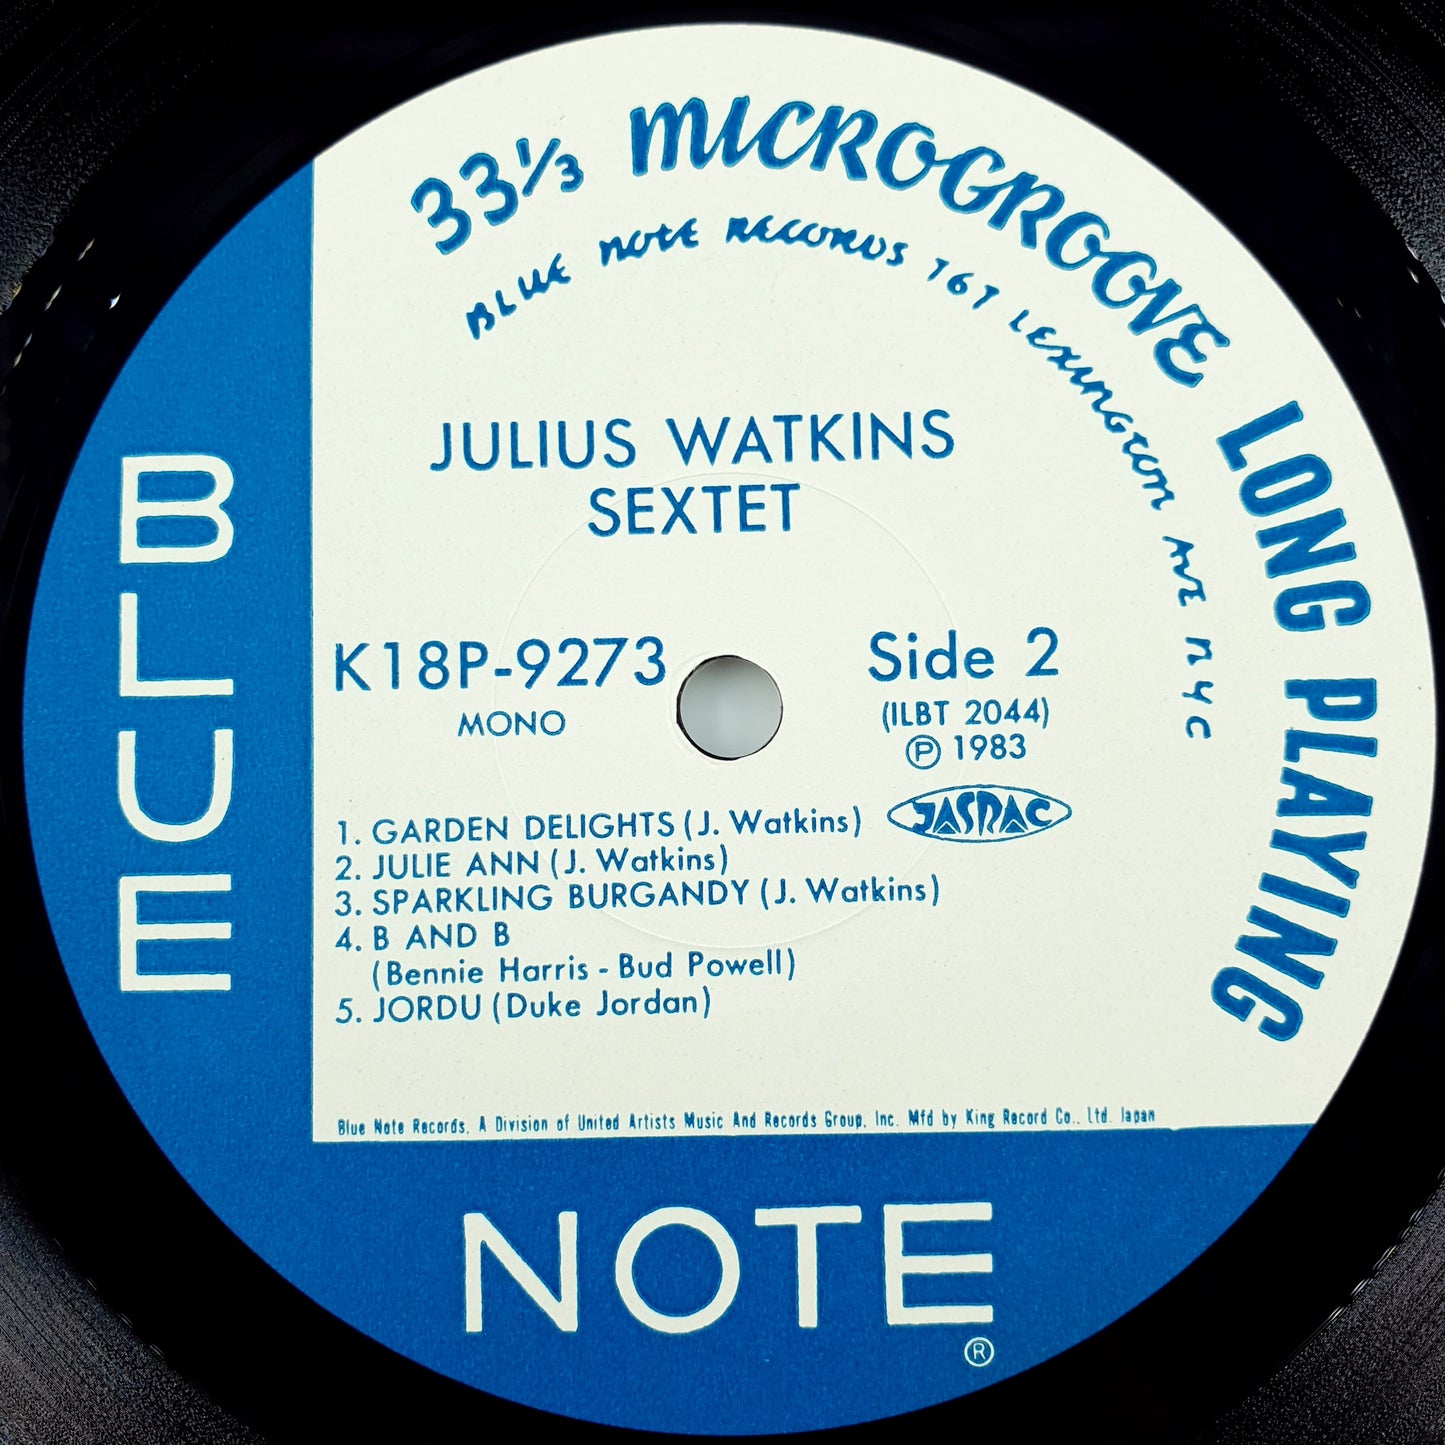 Julius Watkins Sextet – Julius Watkins Sextet